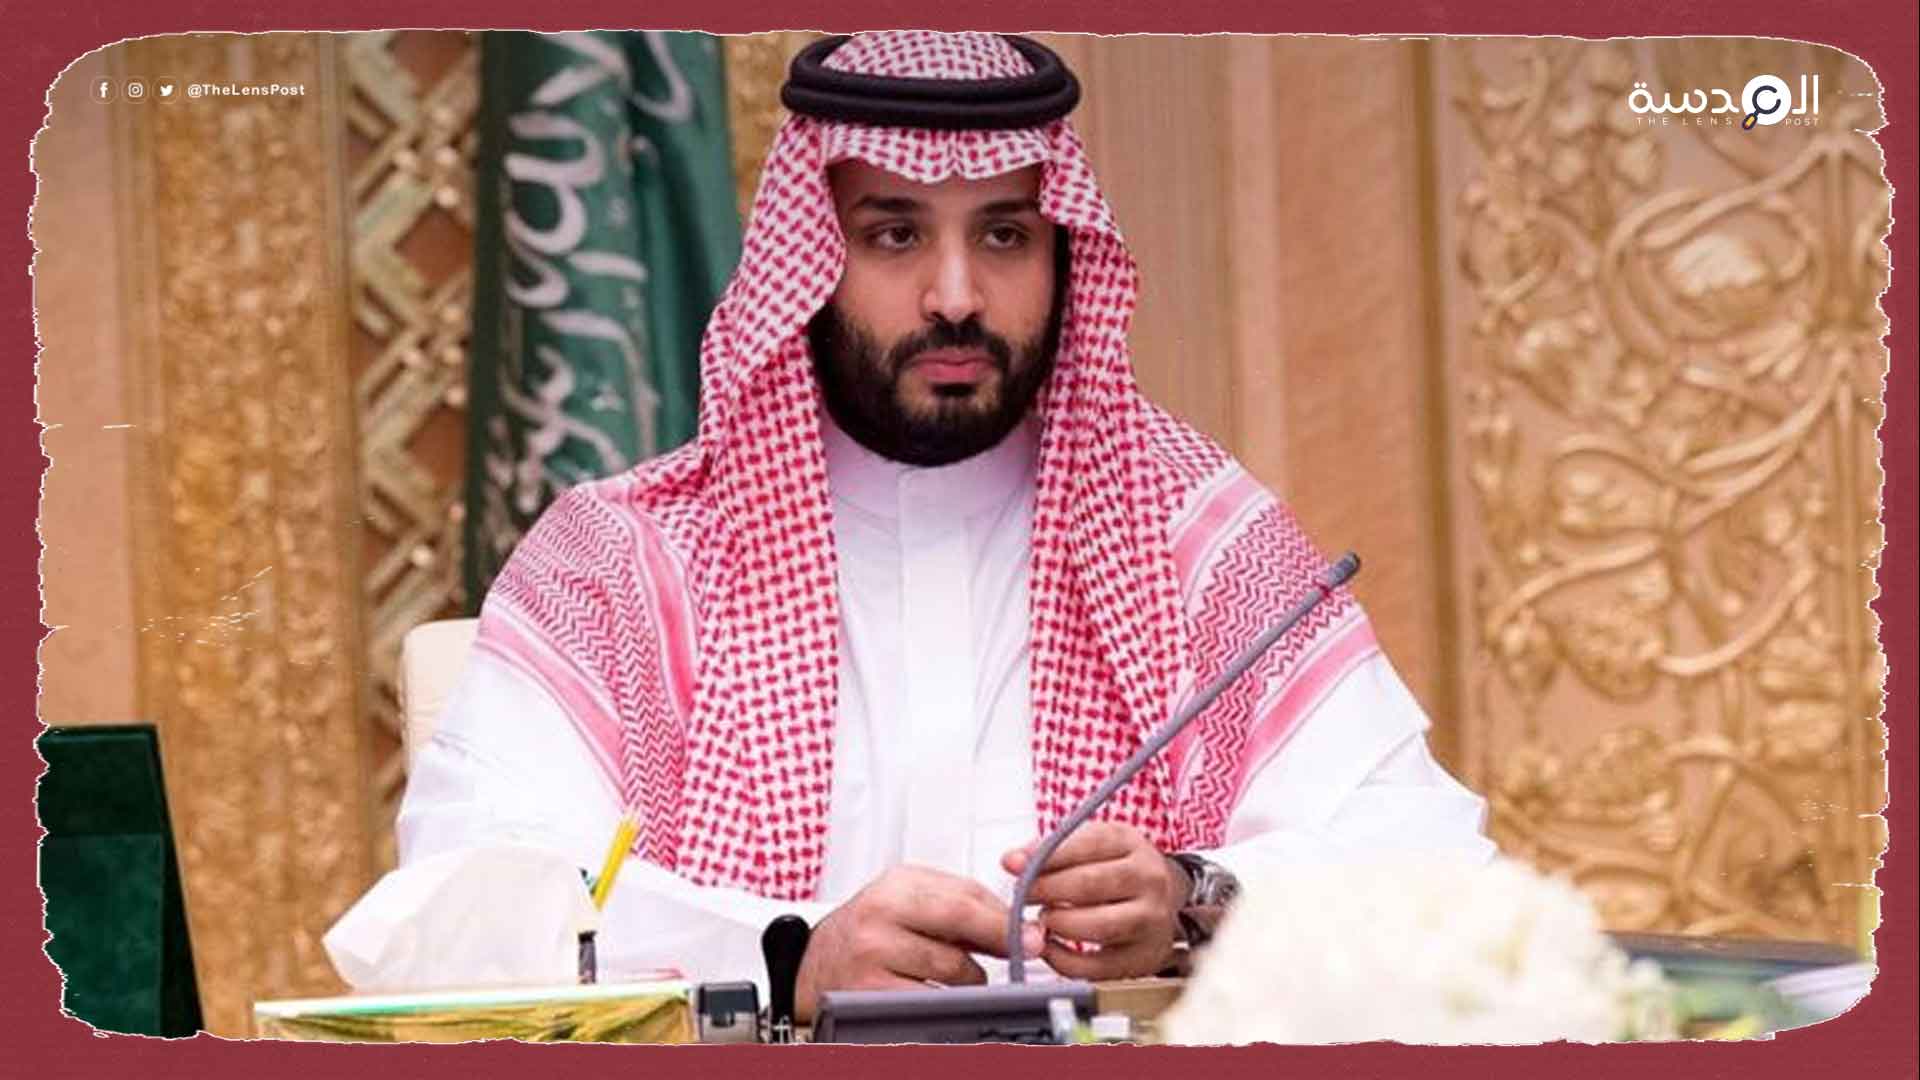 بن سلمان يستبعد عائلات سعودية ويقوي نفوذ أخرى